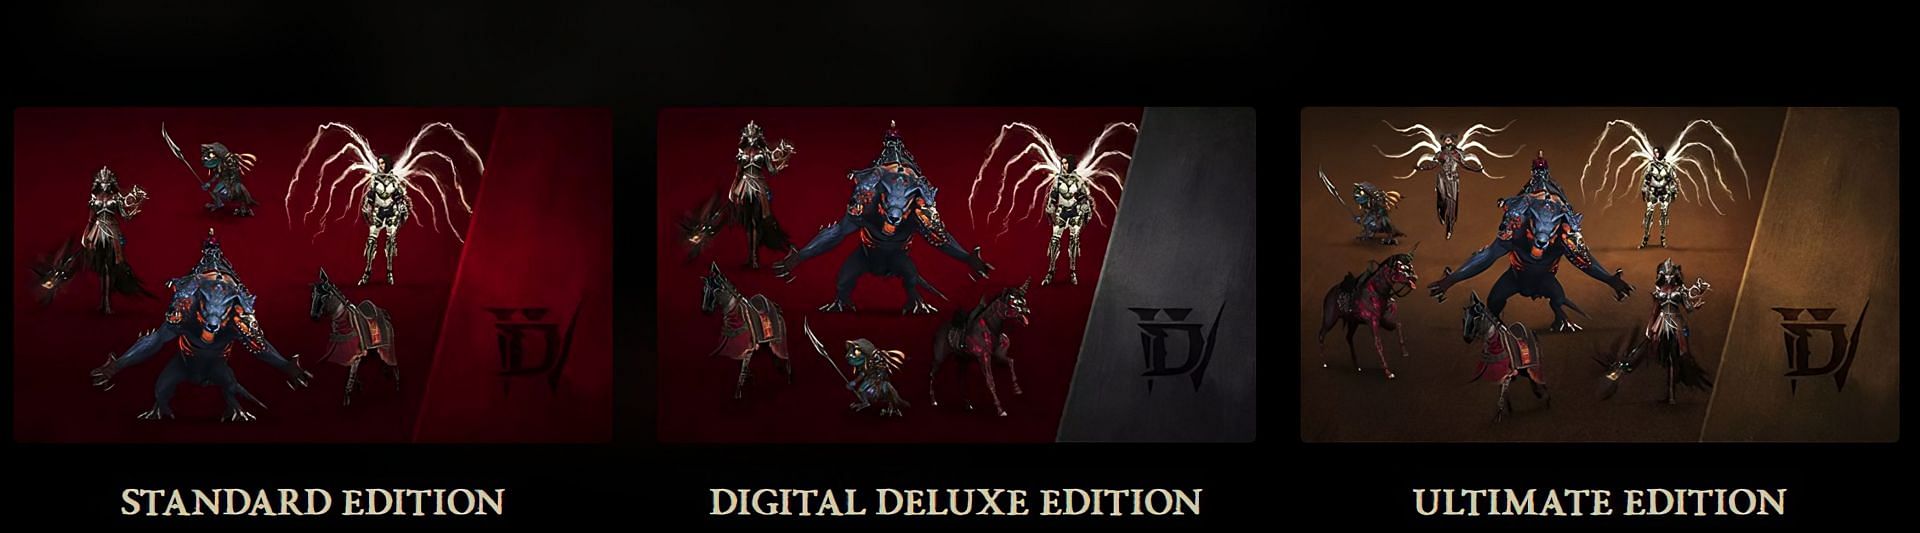 Ediciones de Diablo 4 (Imagen a través de Blizzard Entertainment)